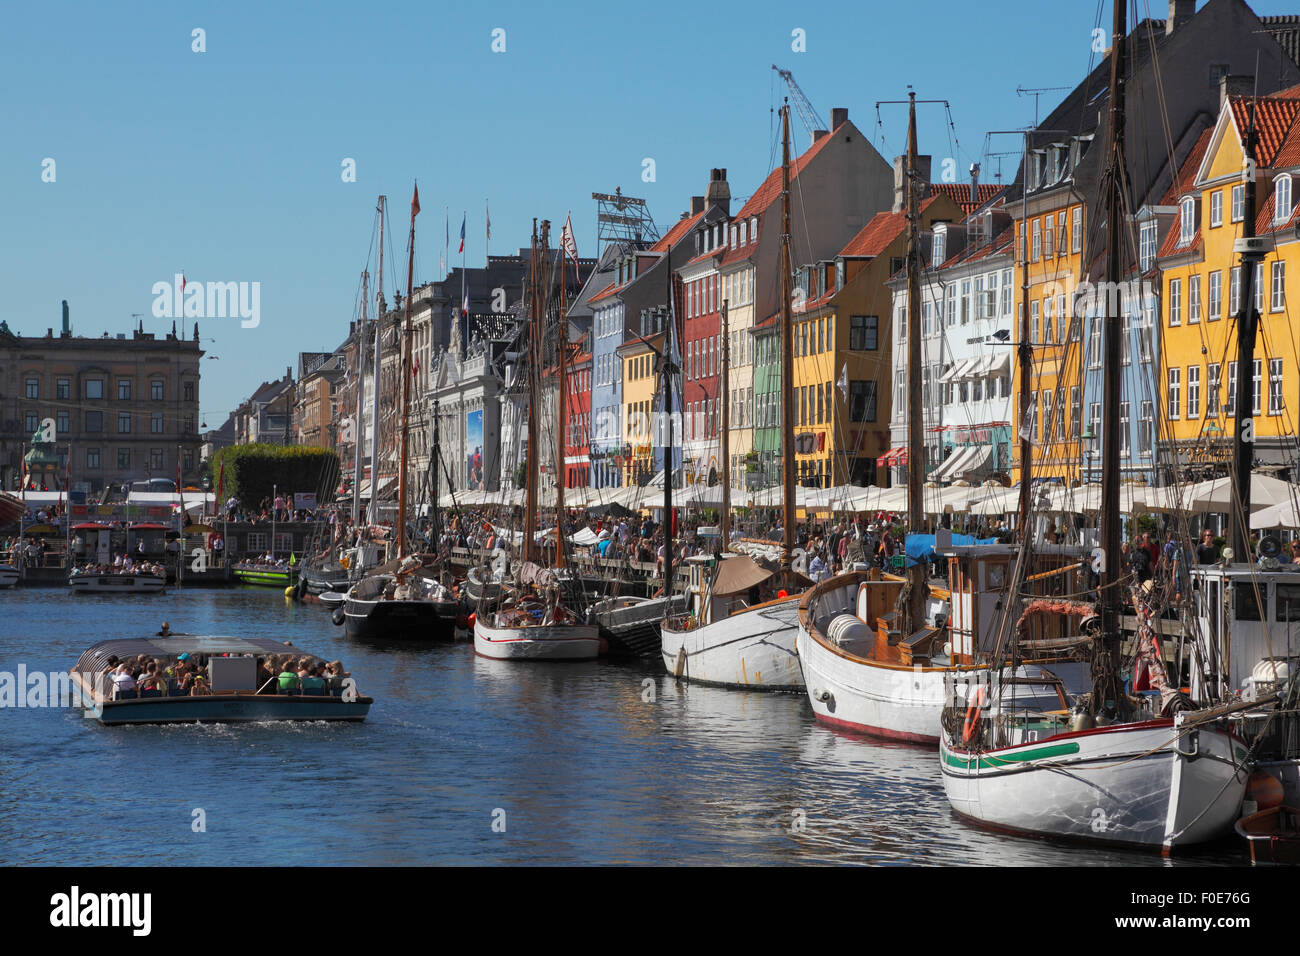 Nyhavn voll von alten Schiffen, überfüllten Kanal tour Boote und Leute an der Wasserseite und Pflaster Restaurants auf einer sehr hektischen Sommertag. Ambiente. Stockfoto